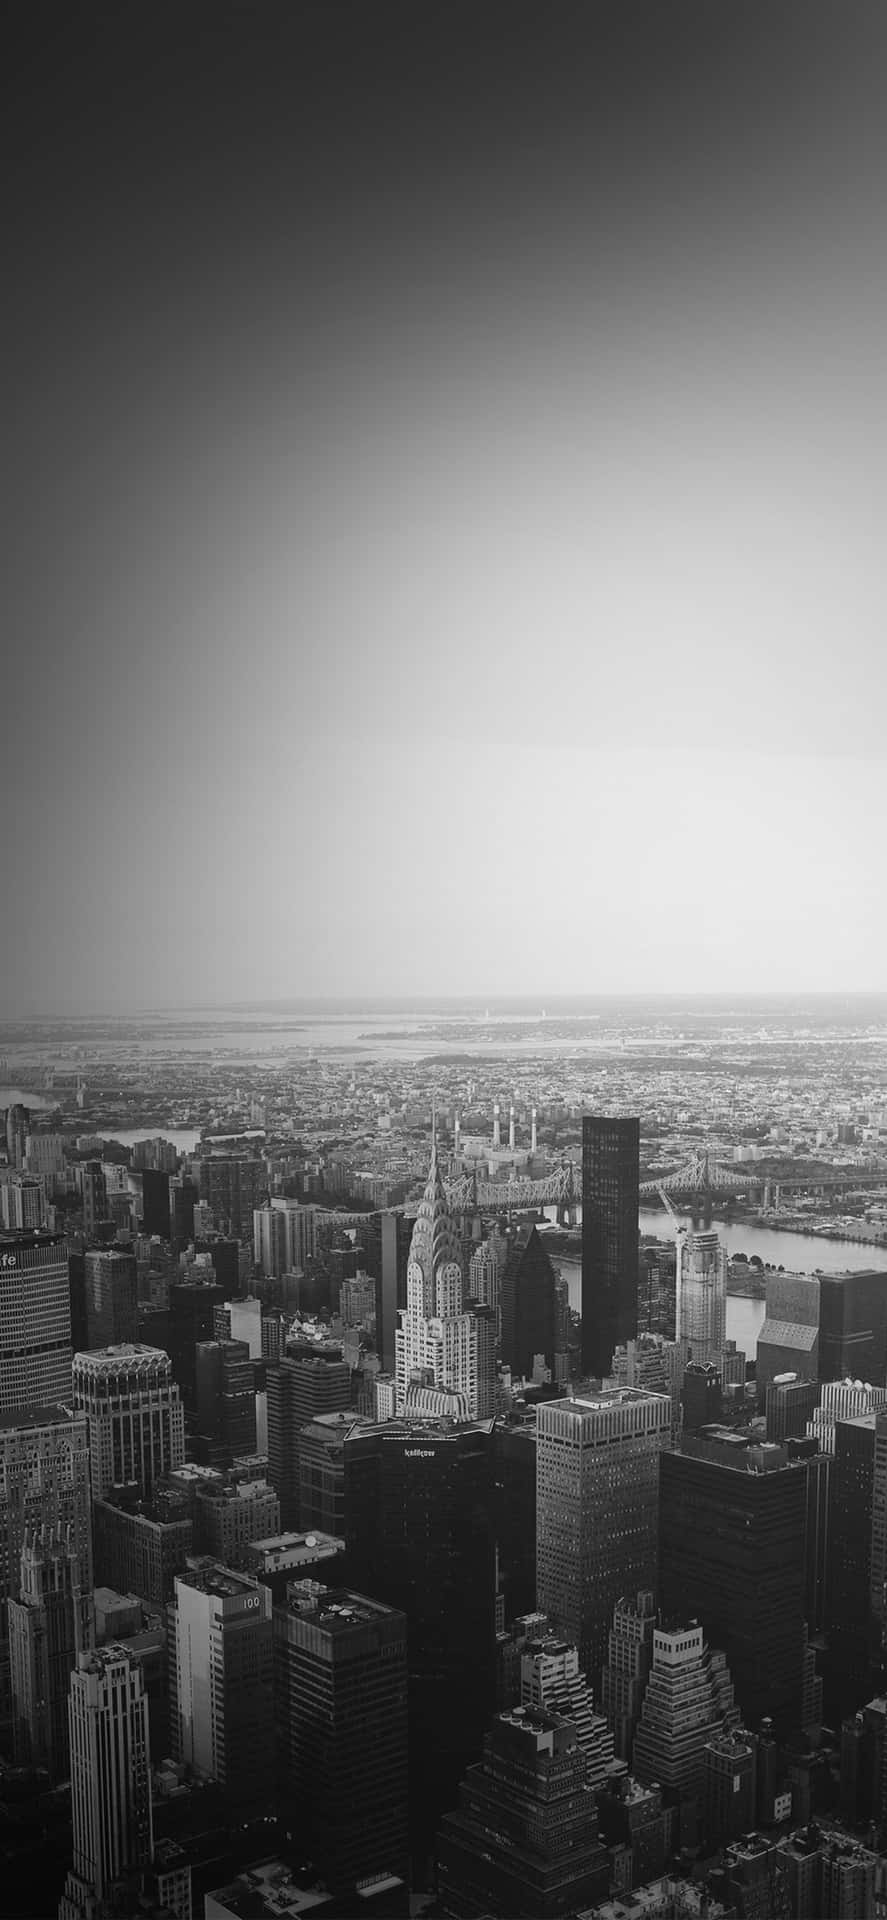 Fångastadens Livfullhet Med Den Perfekta Solnedgångsbilden Av New York City.